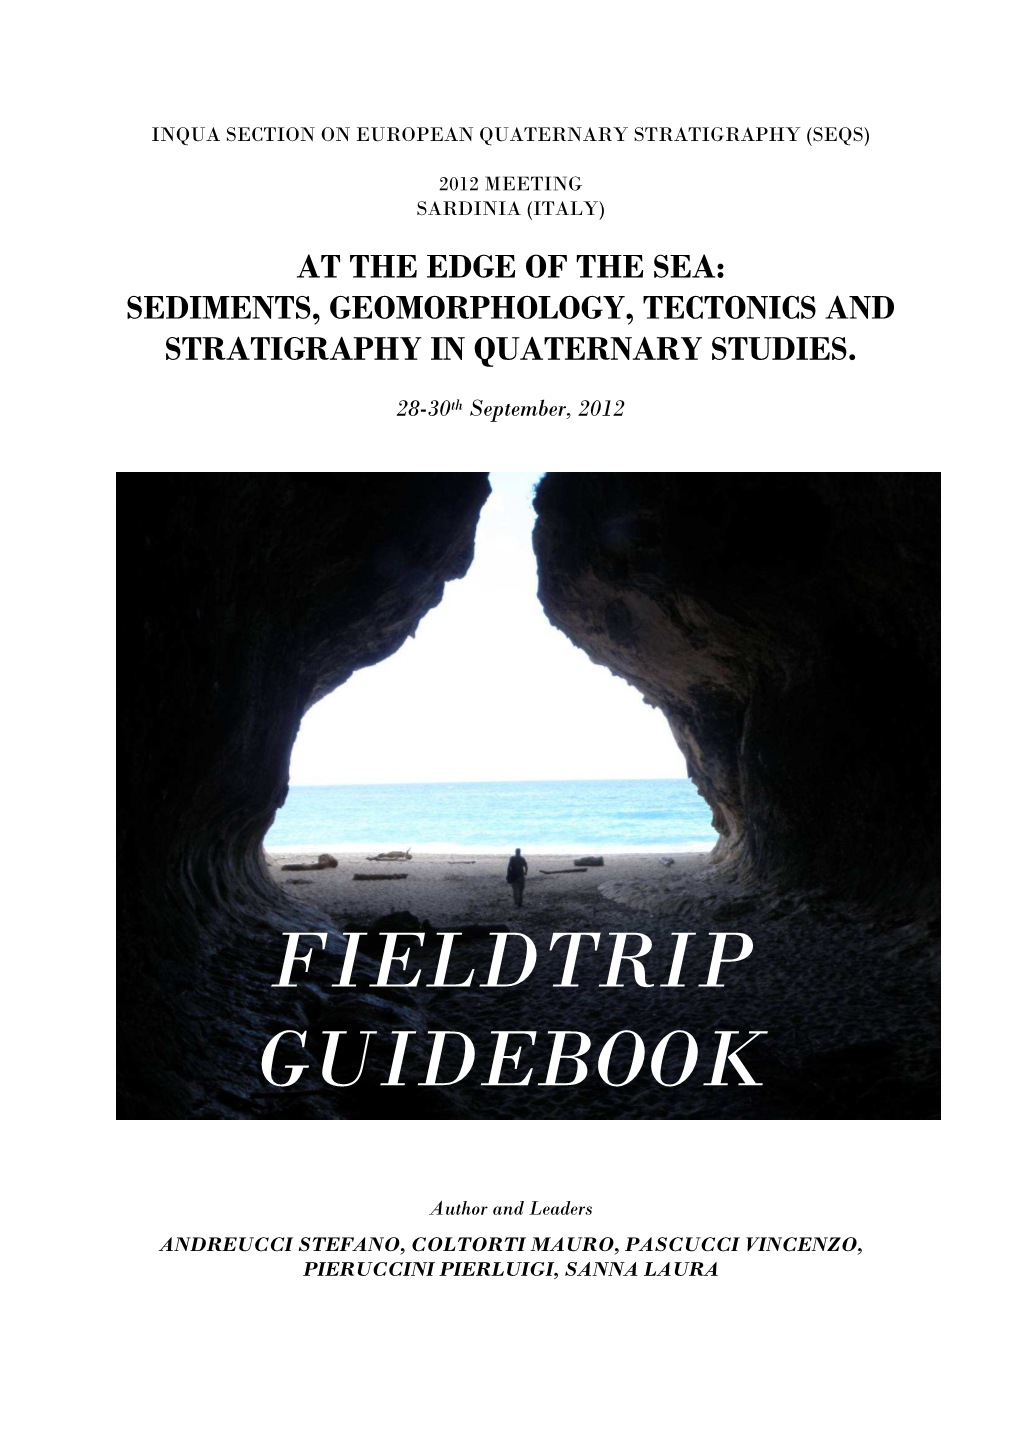 Fieldtrip Guidebook